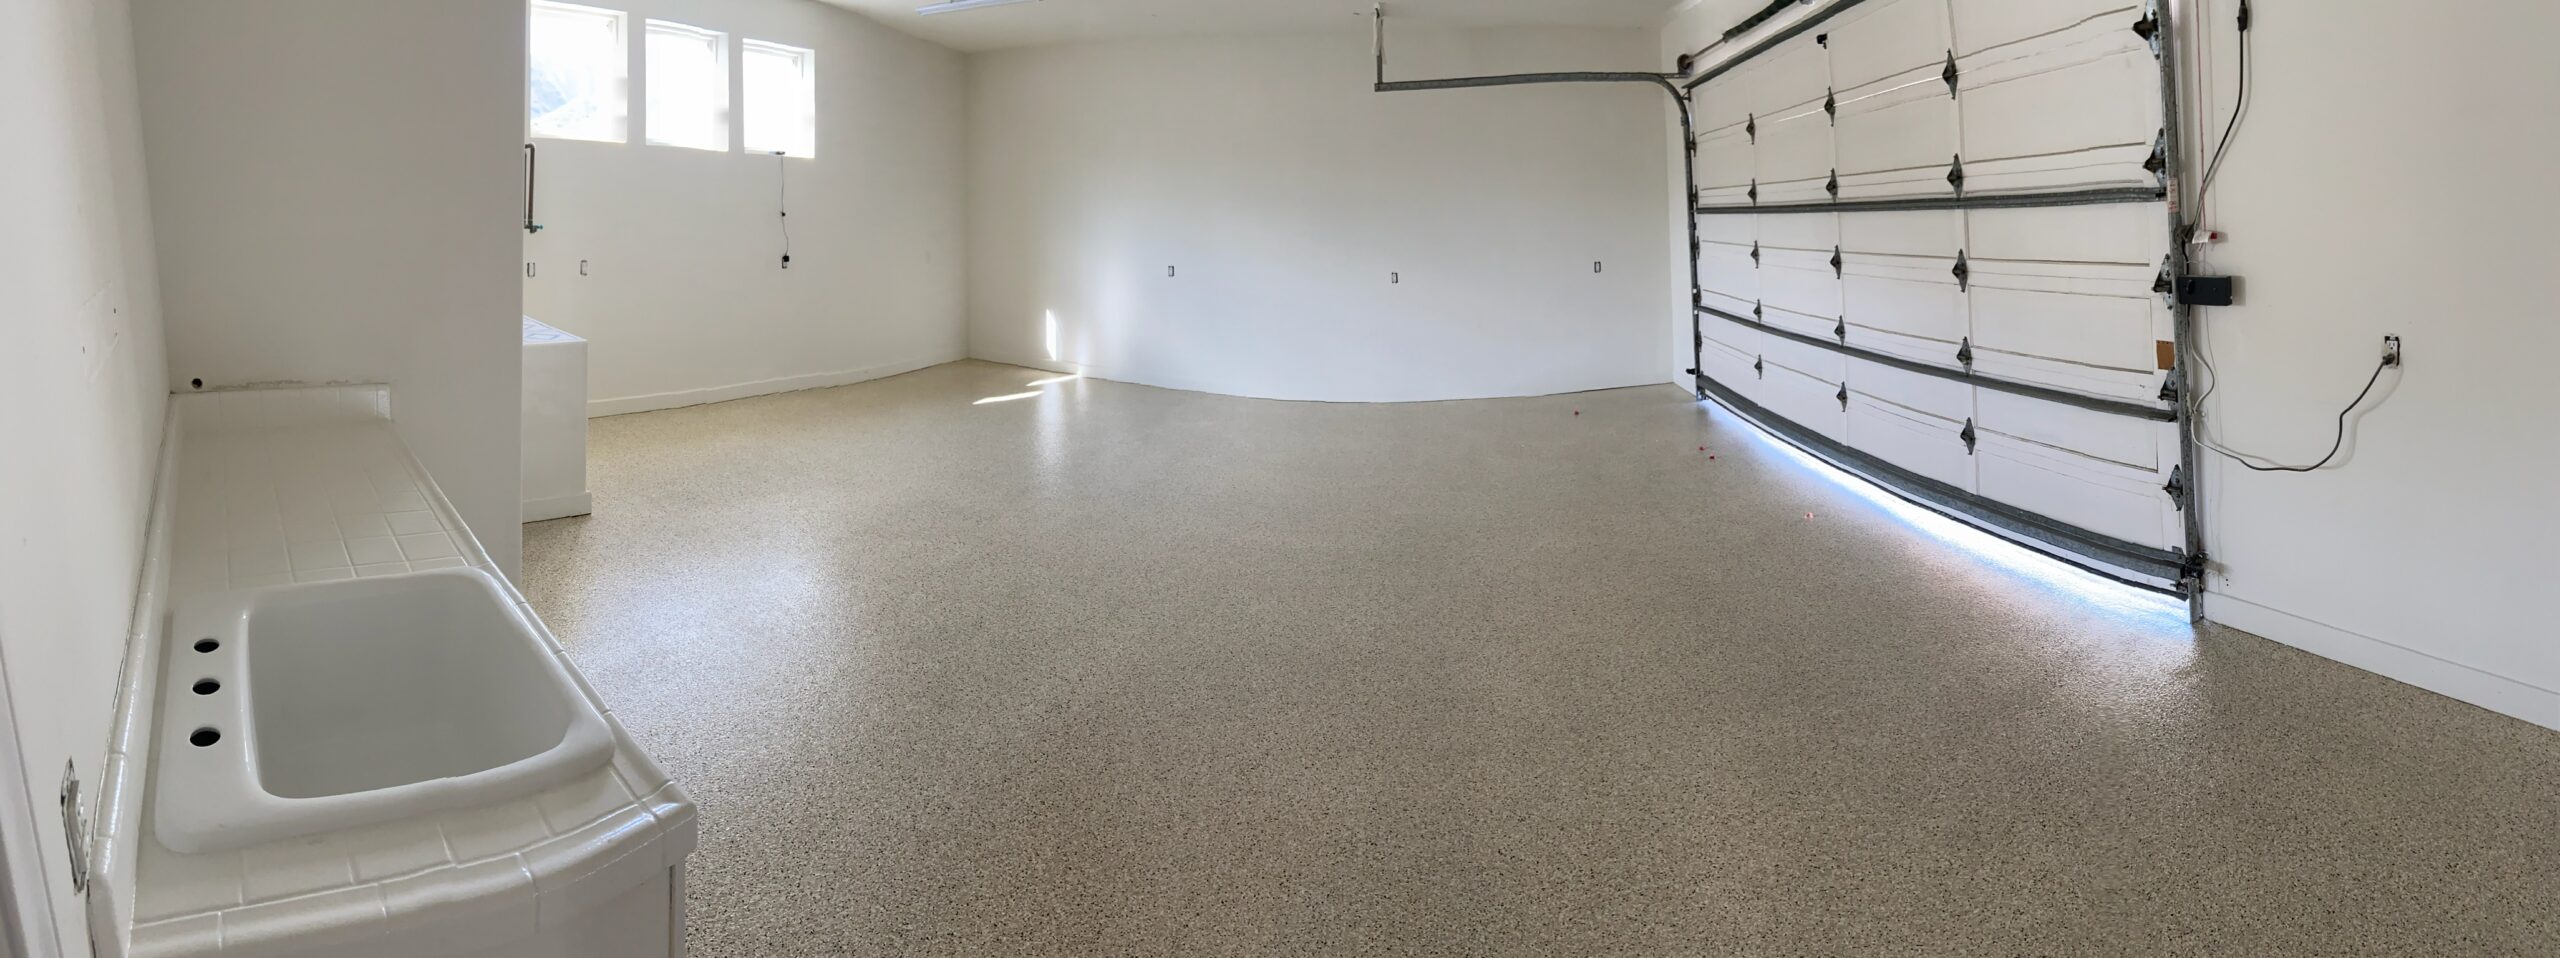 Freshly Sealed Garage Floor